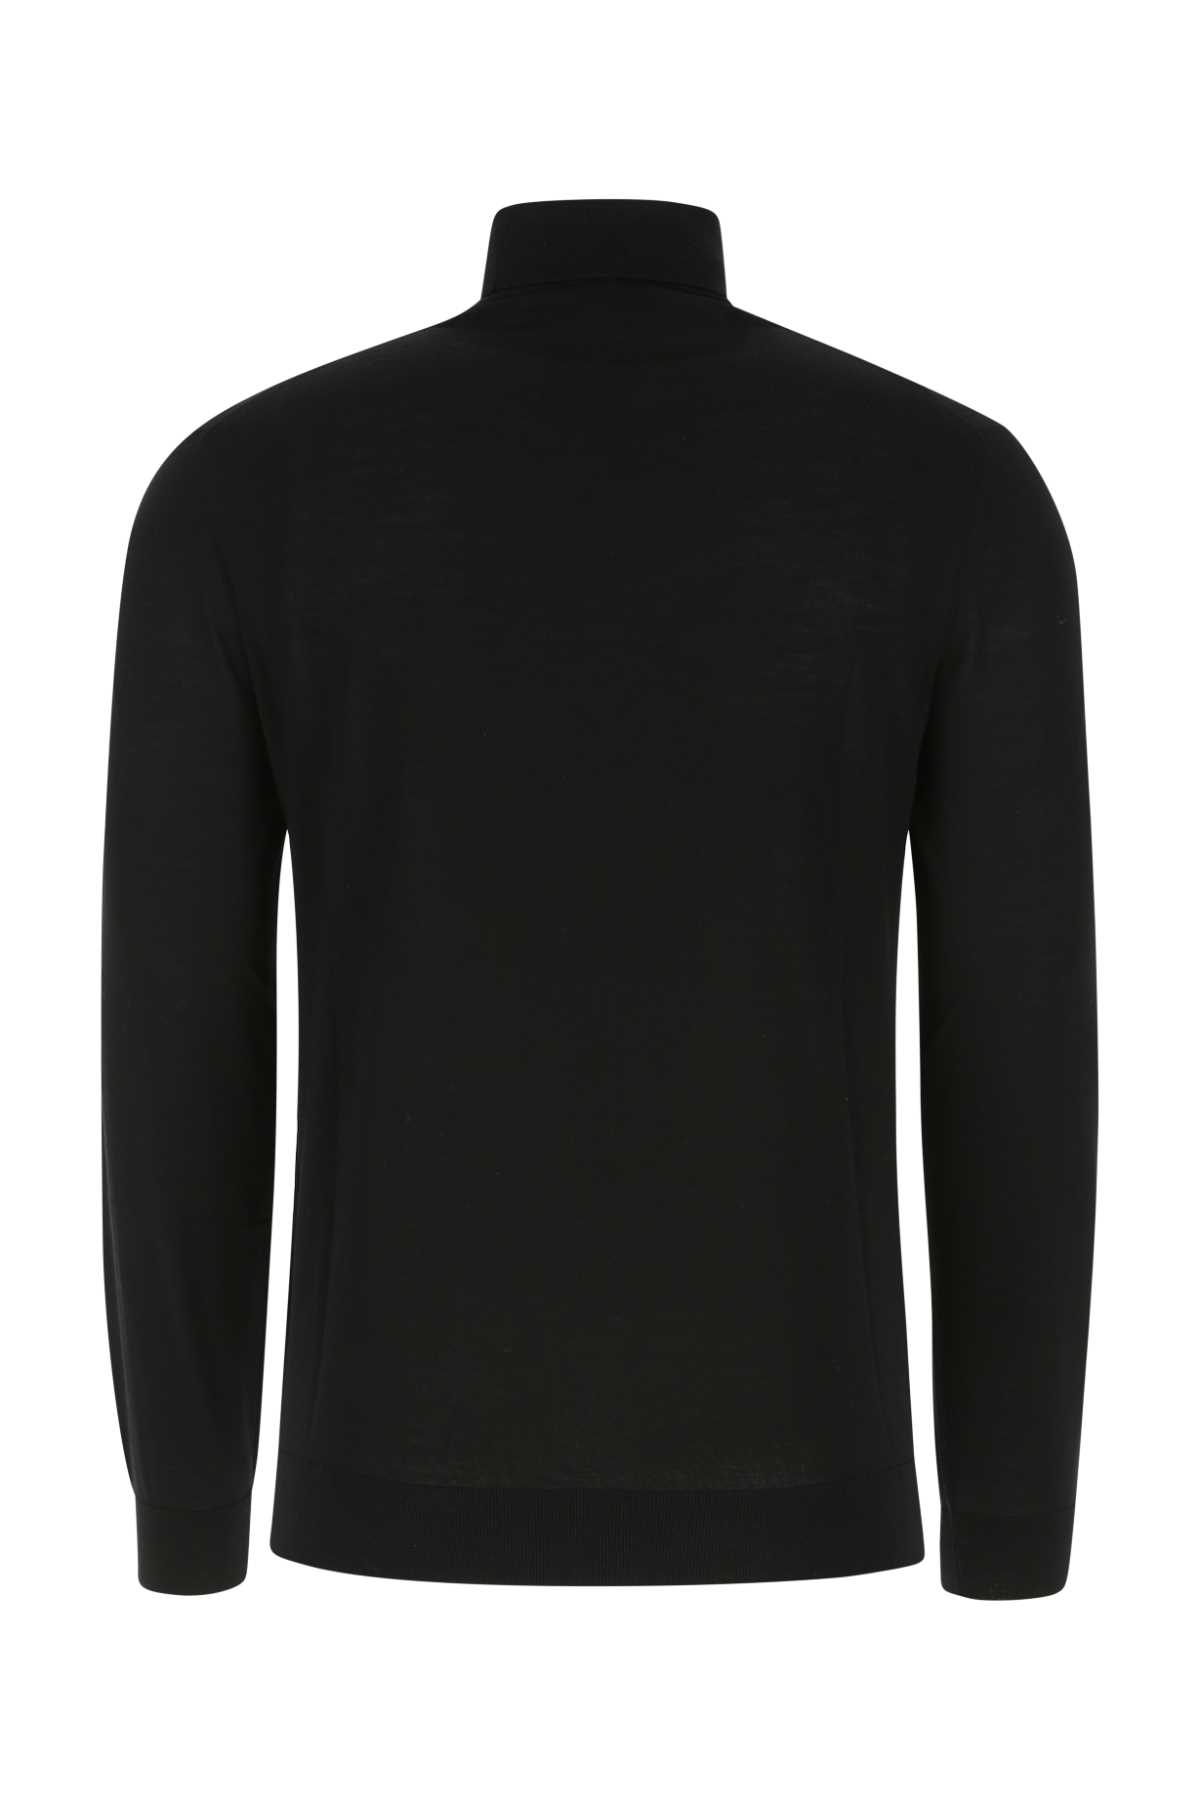 Prada Black Wool Sweater In F0002